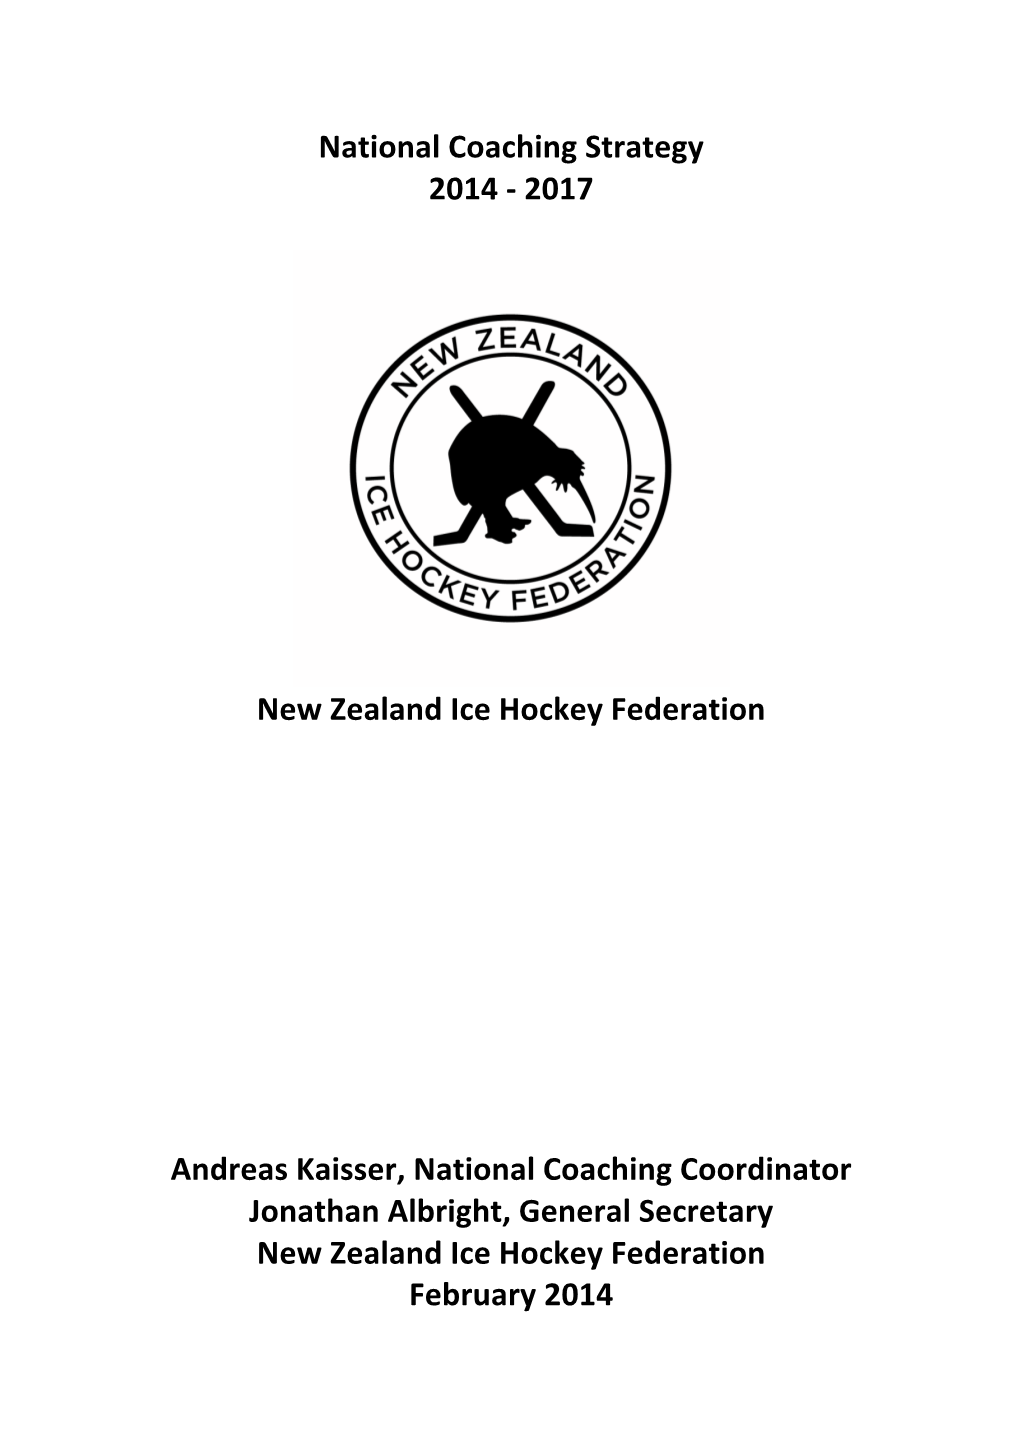 NZIHF Coaching Strategy